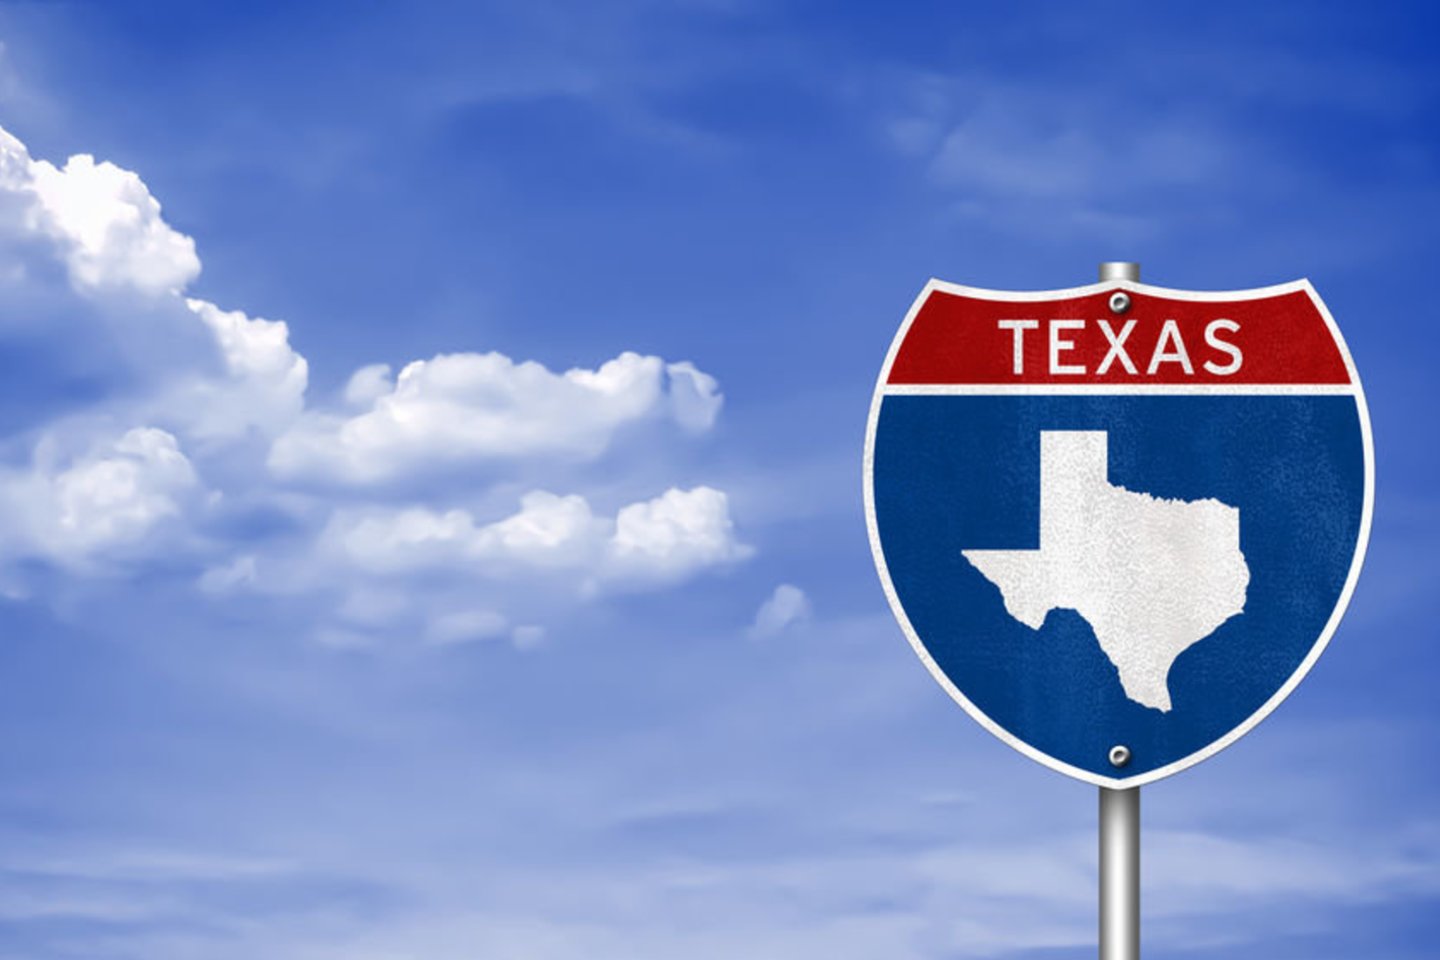 1845 m. Teksasas tapo 28-ąja JAV valstija.<br>123rf